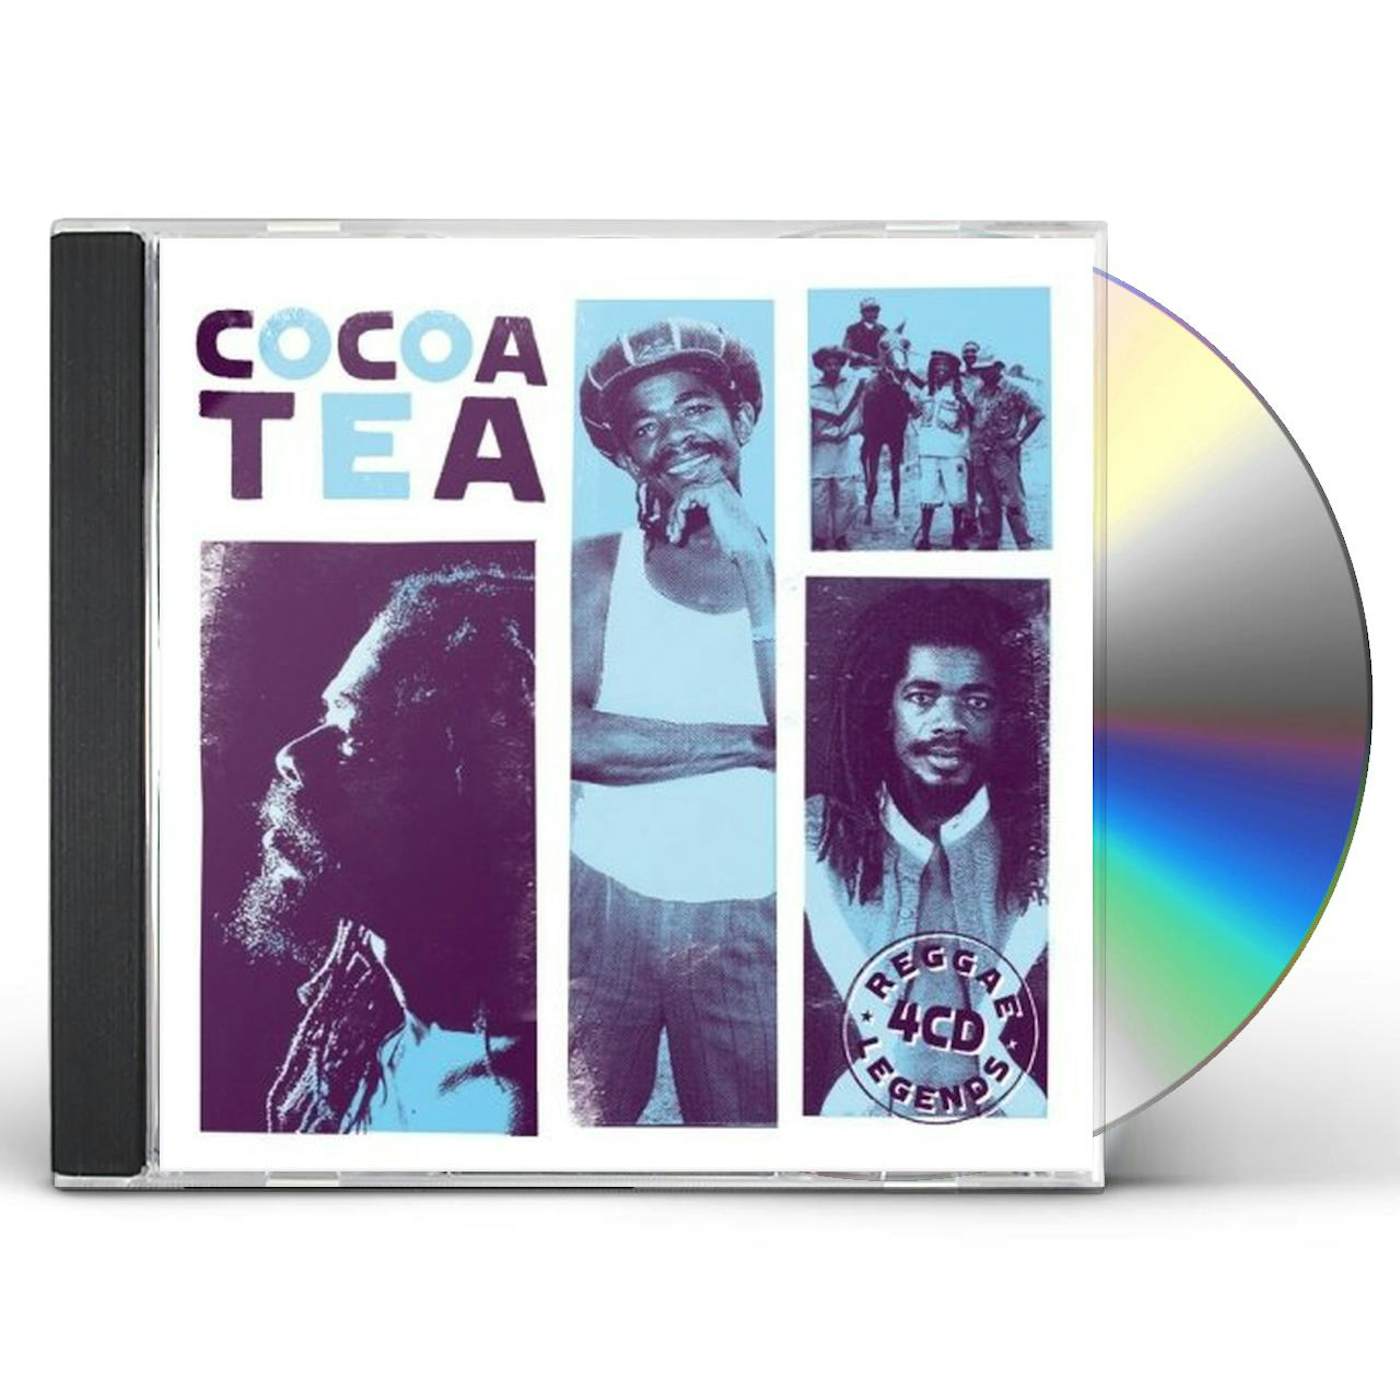 Cocoa Tea REGGAE LEGENDS CD